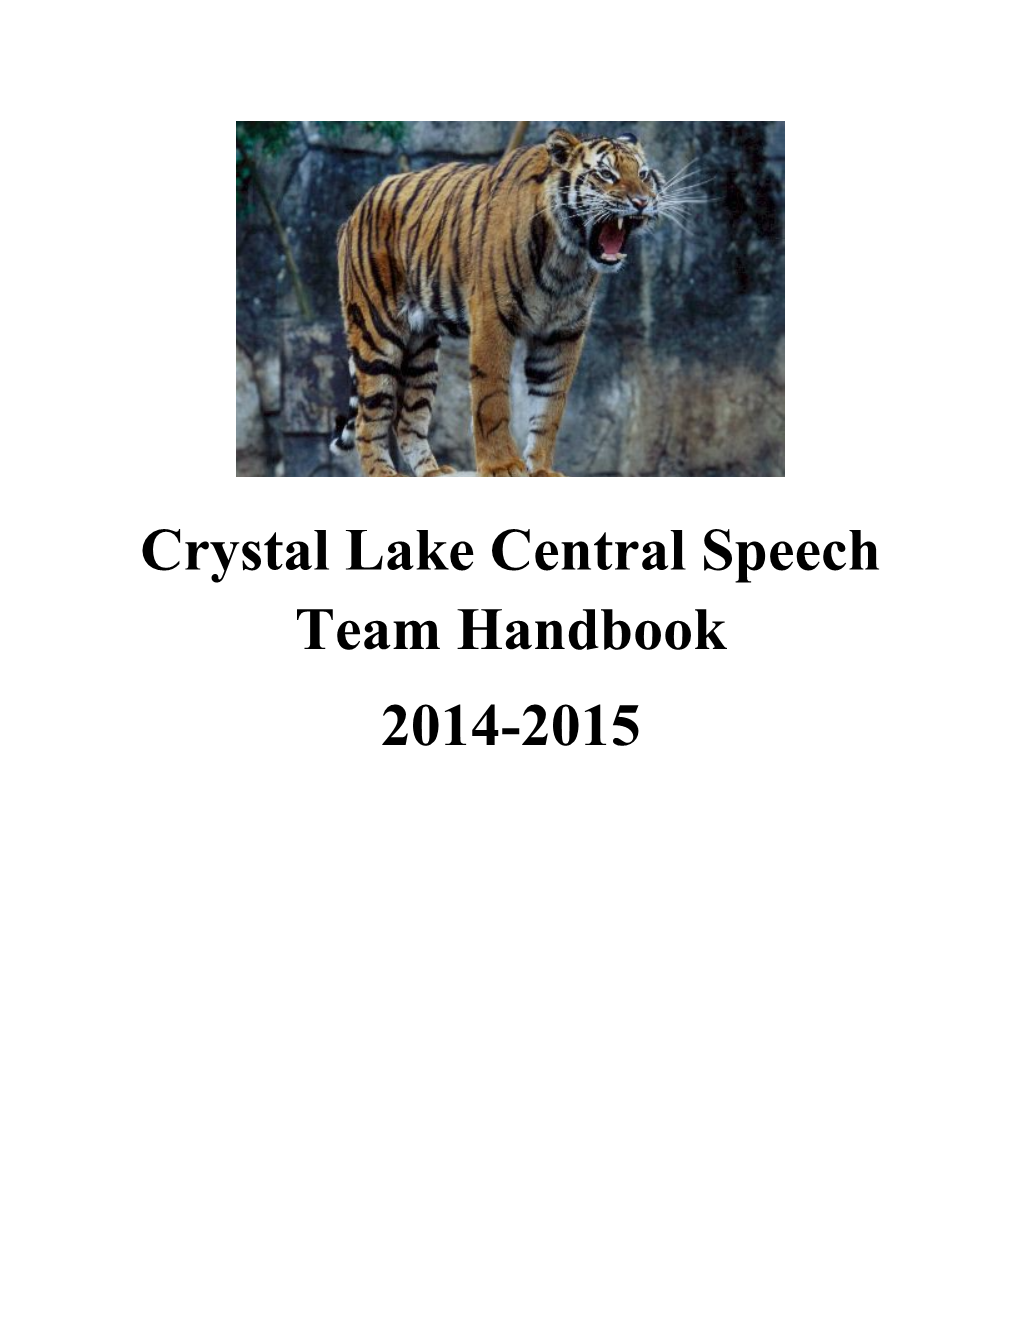 Crystal Lake Central Speech Team Handbook